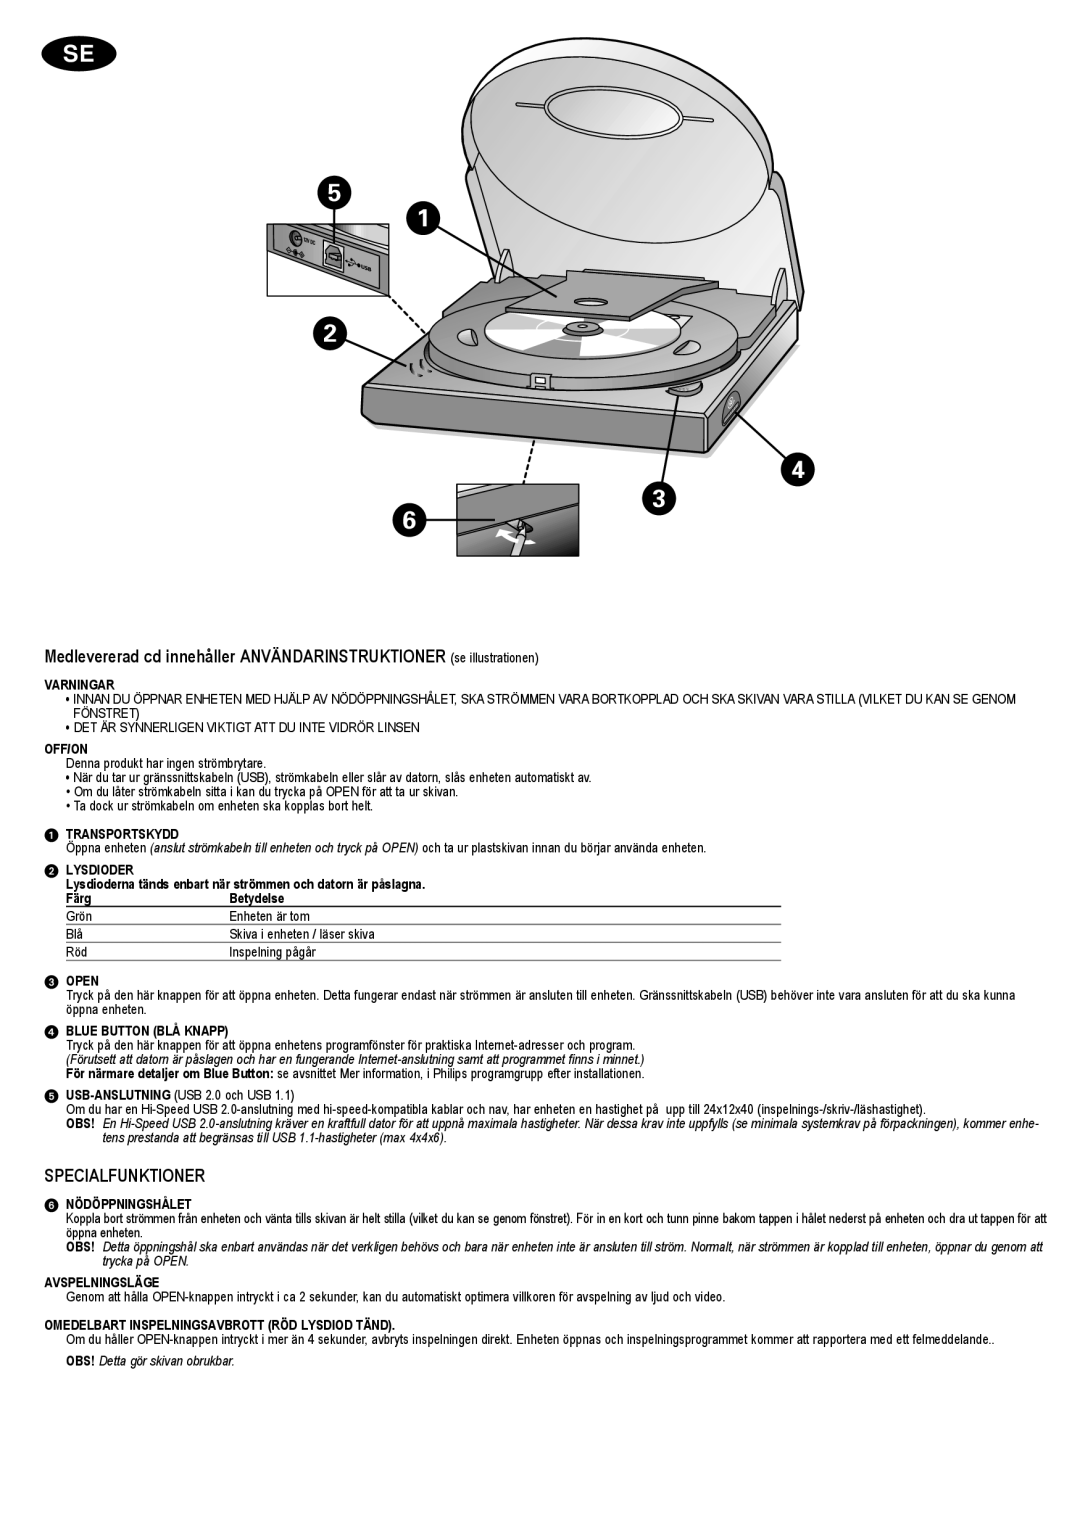 Philips JR24CDRW manual Specialfunktioner 